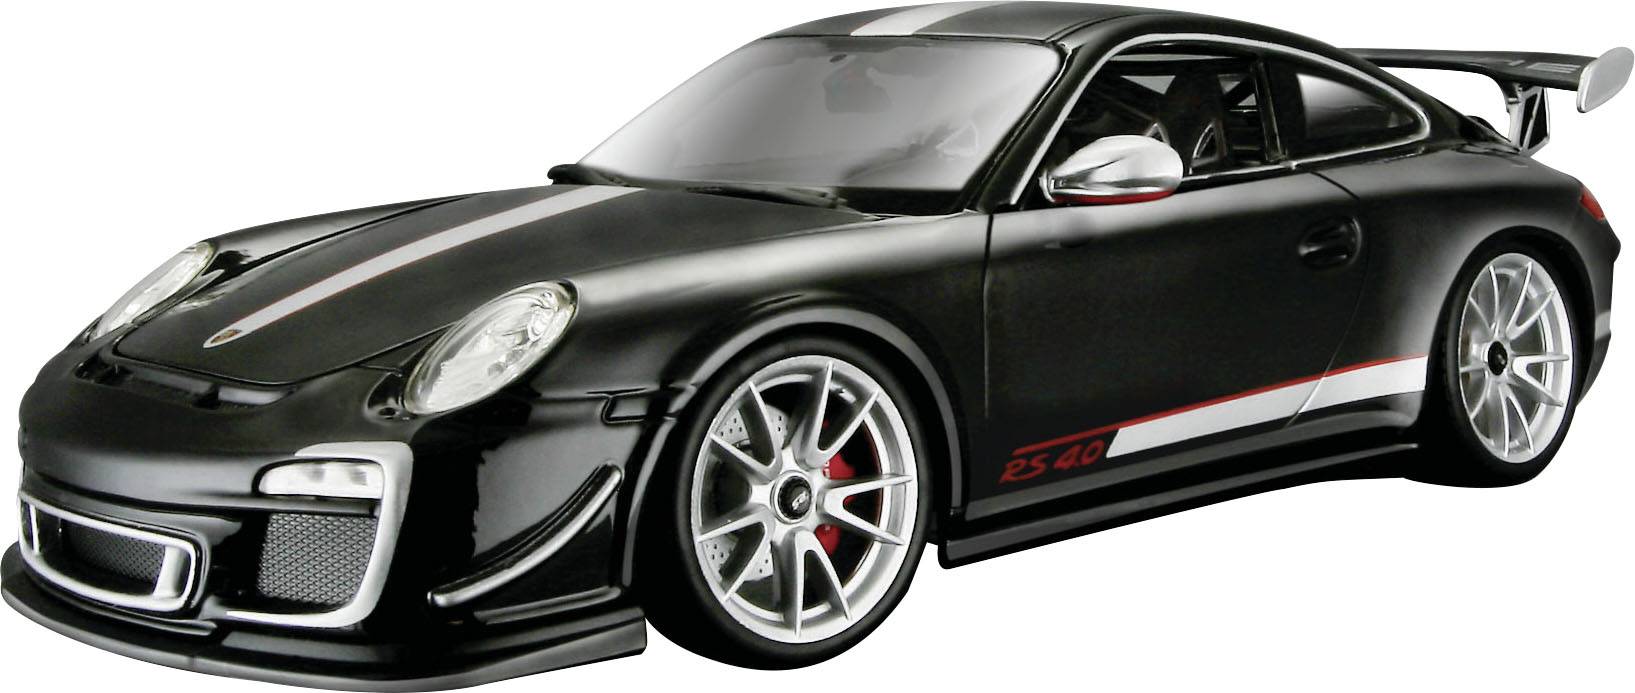 Model Samochodu Bburago Porsche 911 Gt3 Rs 4,0 | Zamów W Conrad.pl